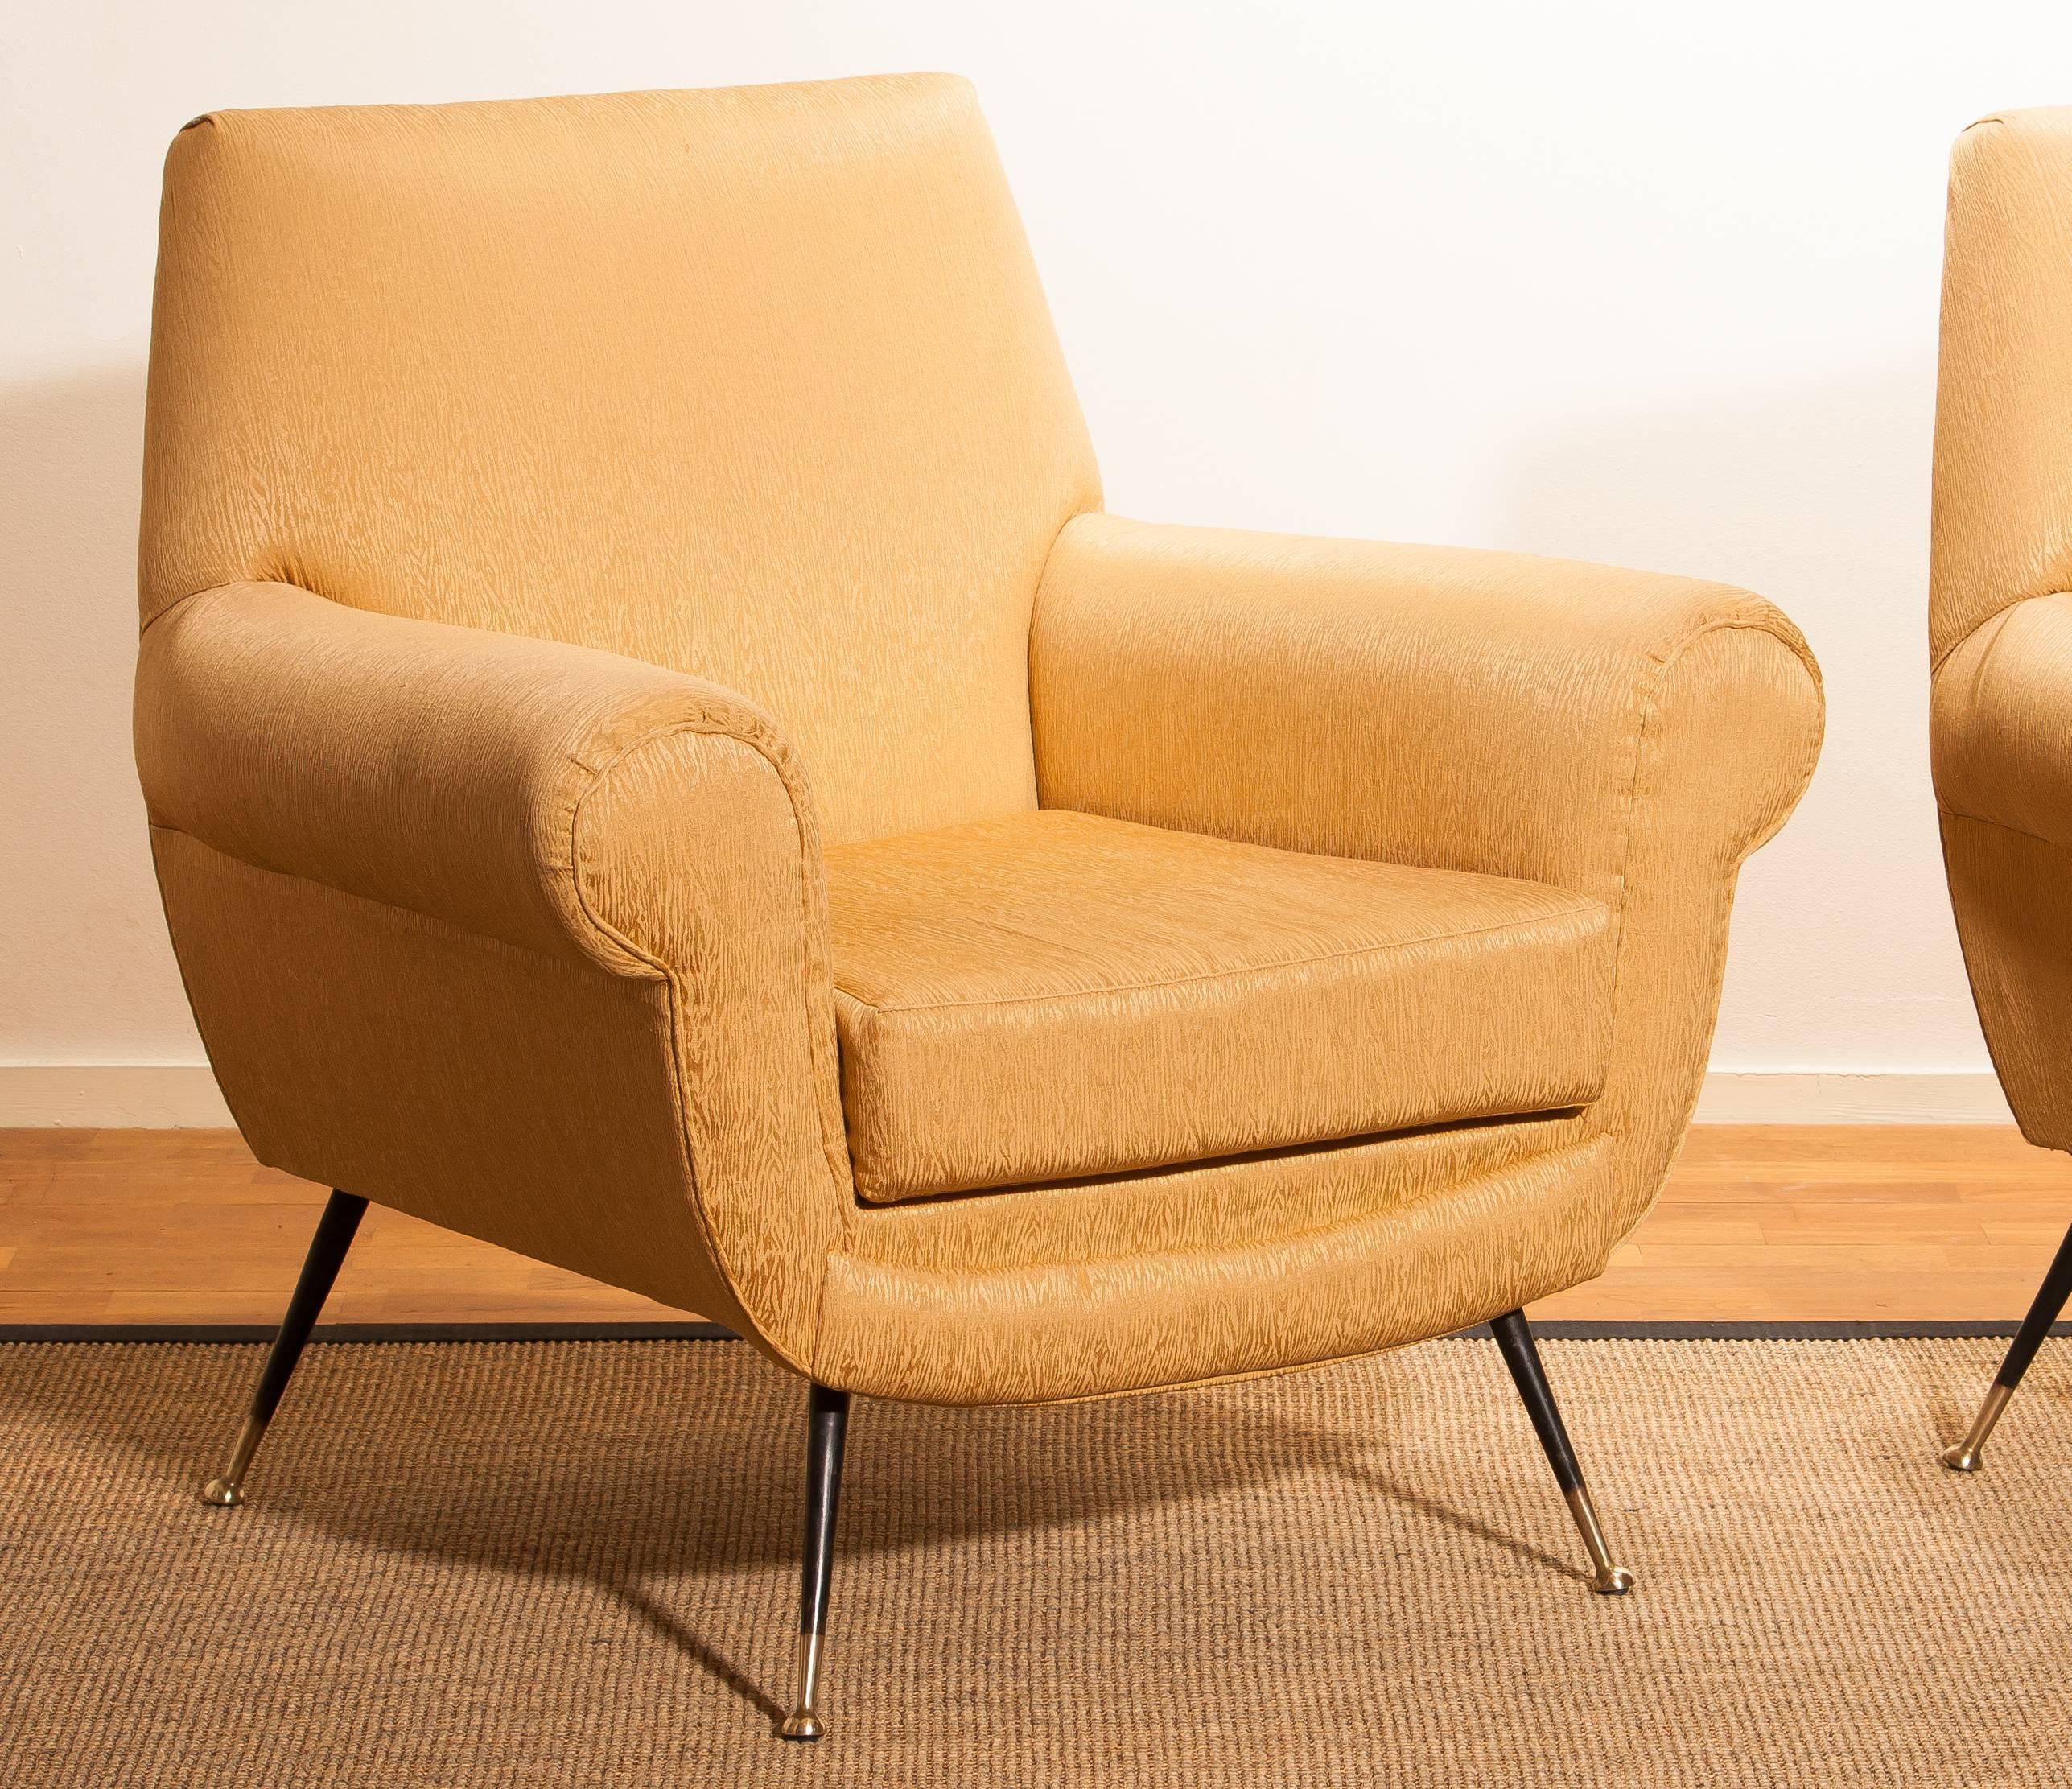 Golden Jacquard Upholstered Easy Chairs by Gigi Radice for Minotti, Brass Legs. 7